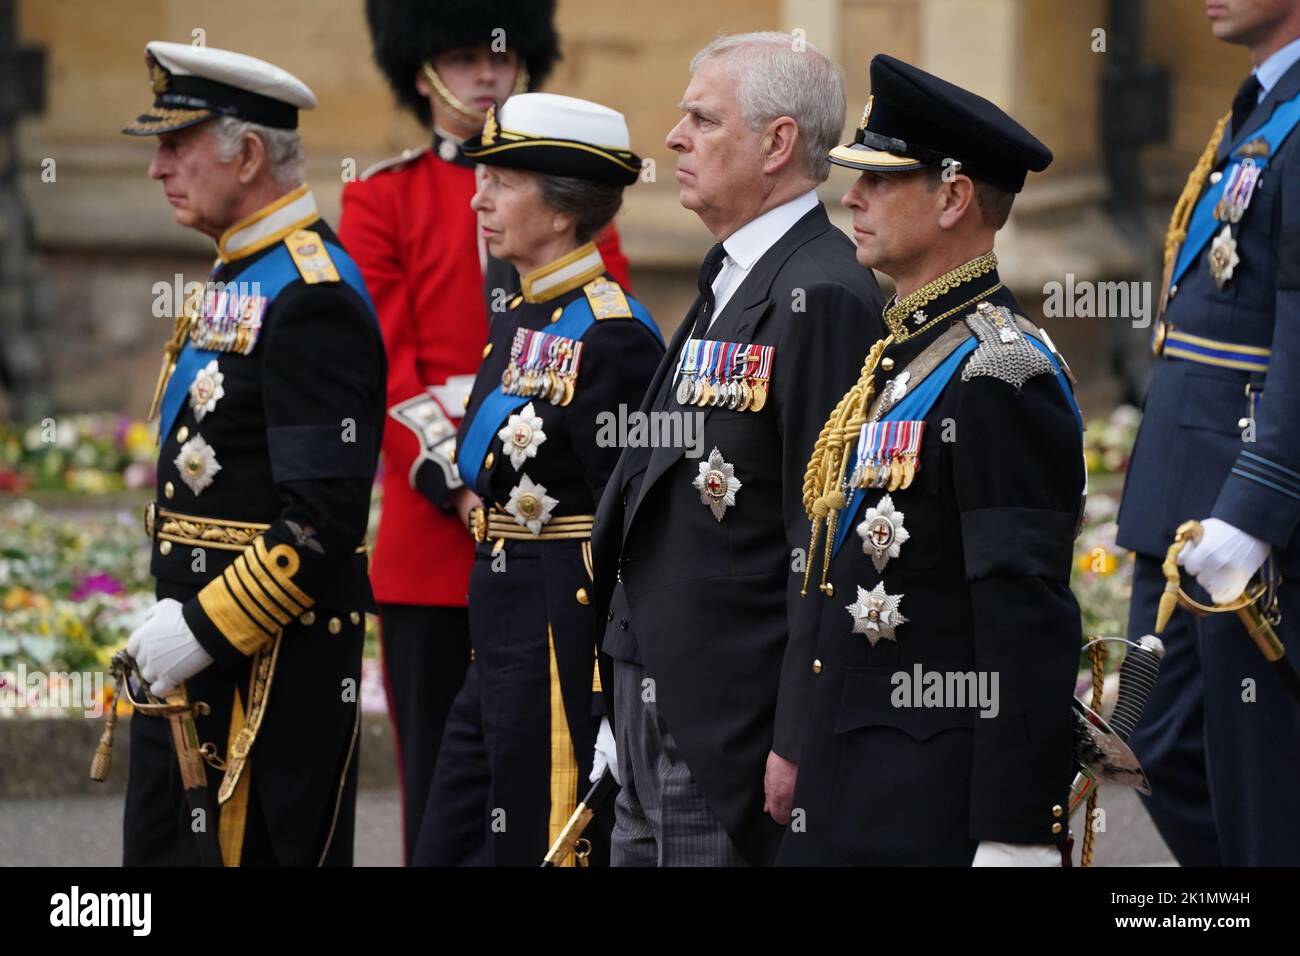 Le roi Charles III, la princesse royale, le duc de York, le comte de Wessex arrivant pour le service de committal à la chapelle Saint-Georges, le château de Windsor pour la reine Elizabeth II Date de la photo: Lundi 19 septembre 2022. Banque D'Images